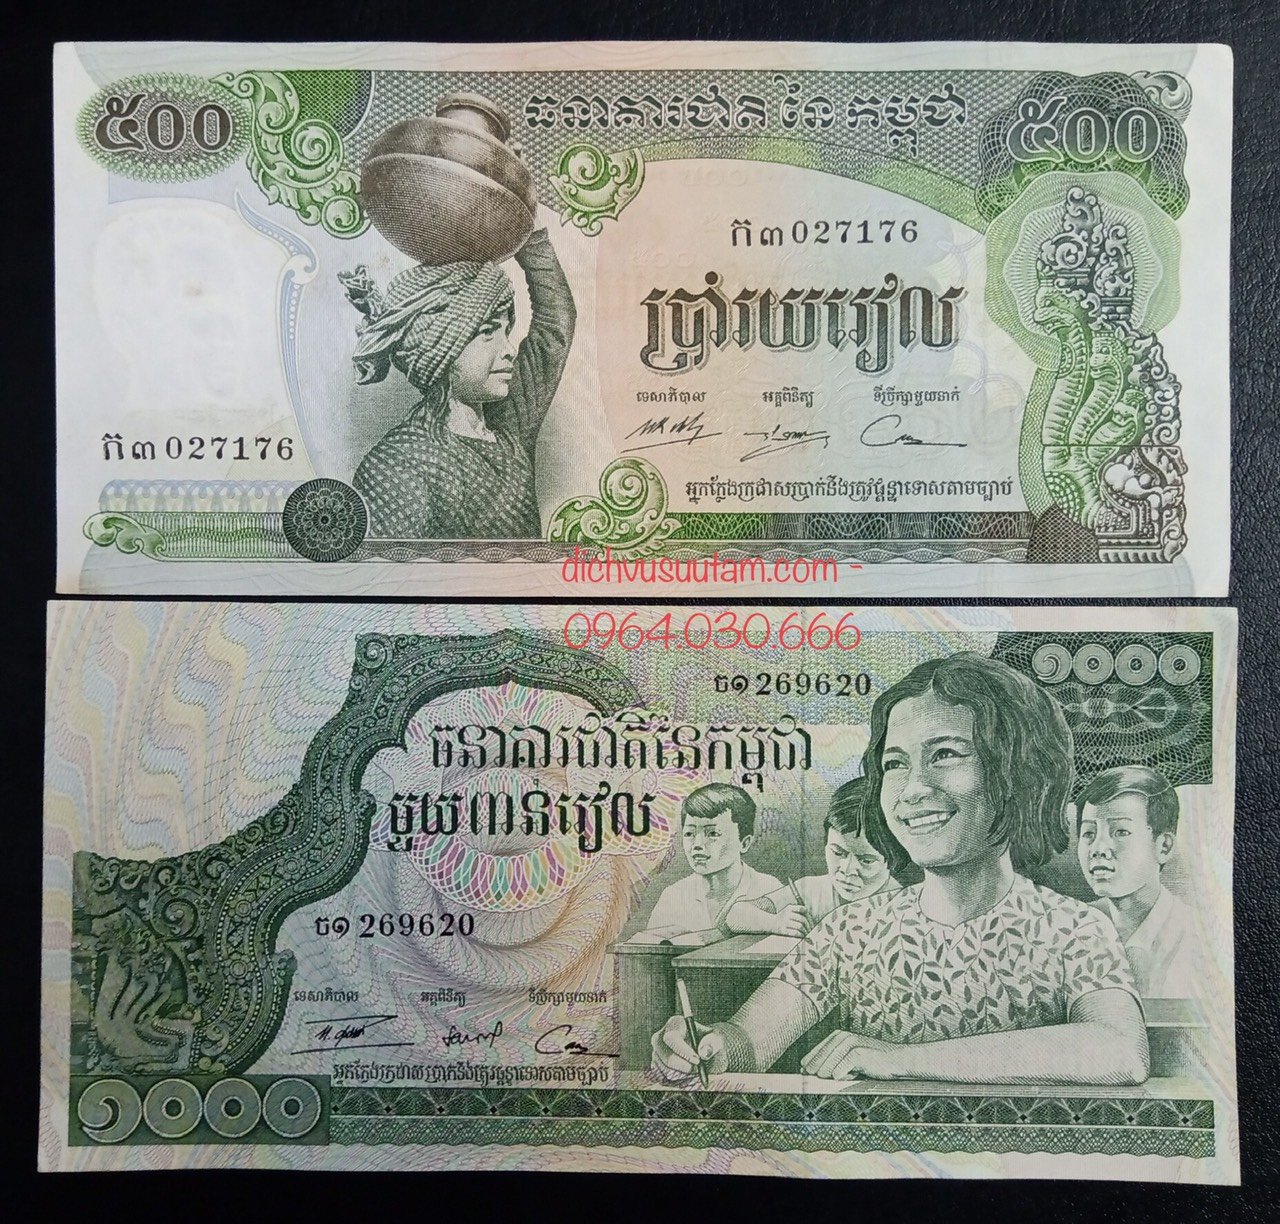 Tiền xưa Campuchia đã từng là phương tiện thanh toán quan trọng của quốc gia này. Hãy xem qua hình ảnh để hiểu thêm về lịch sử và văn hóa của Campuchia.